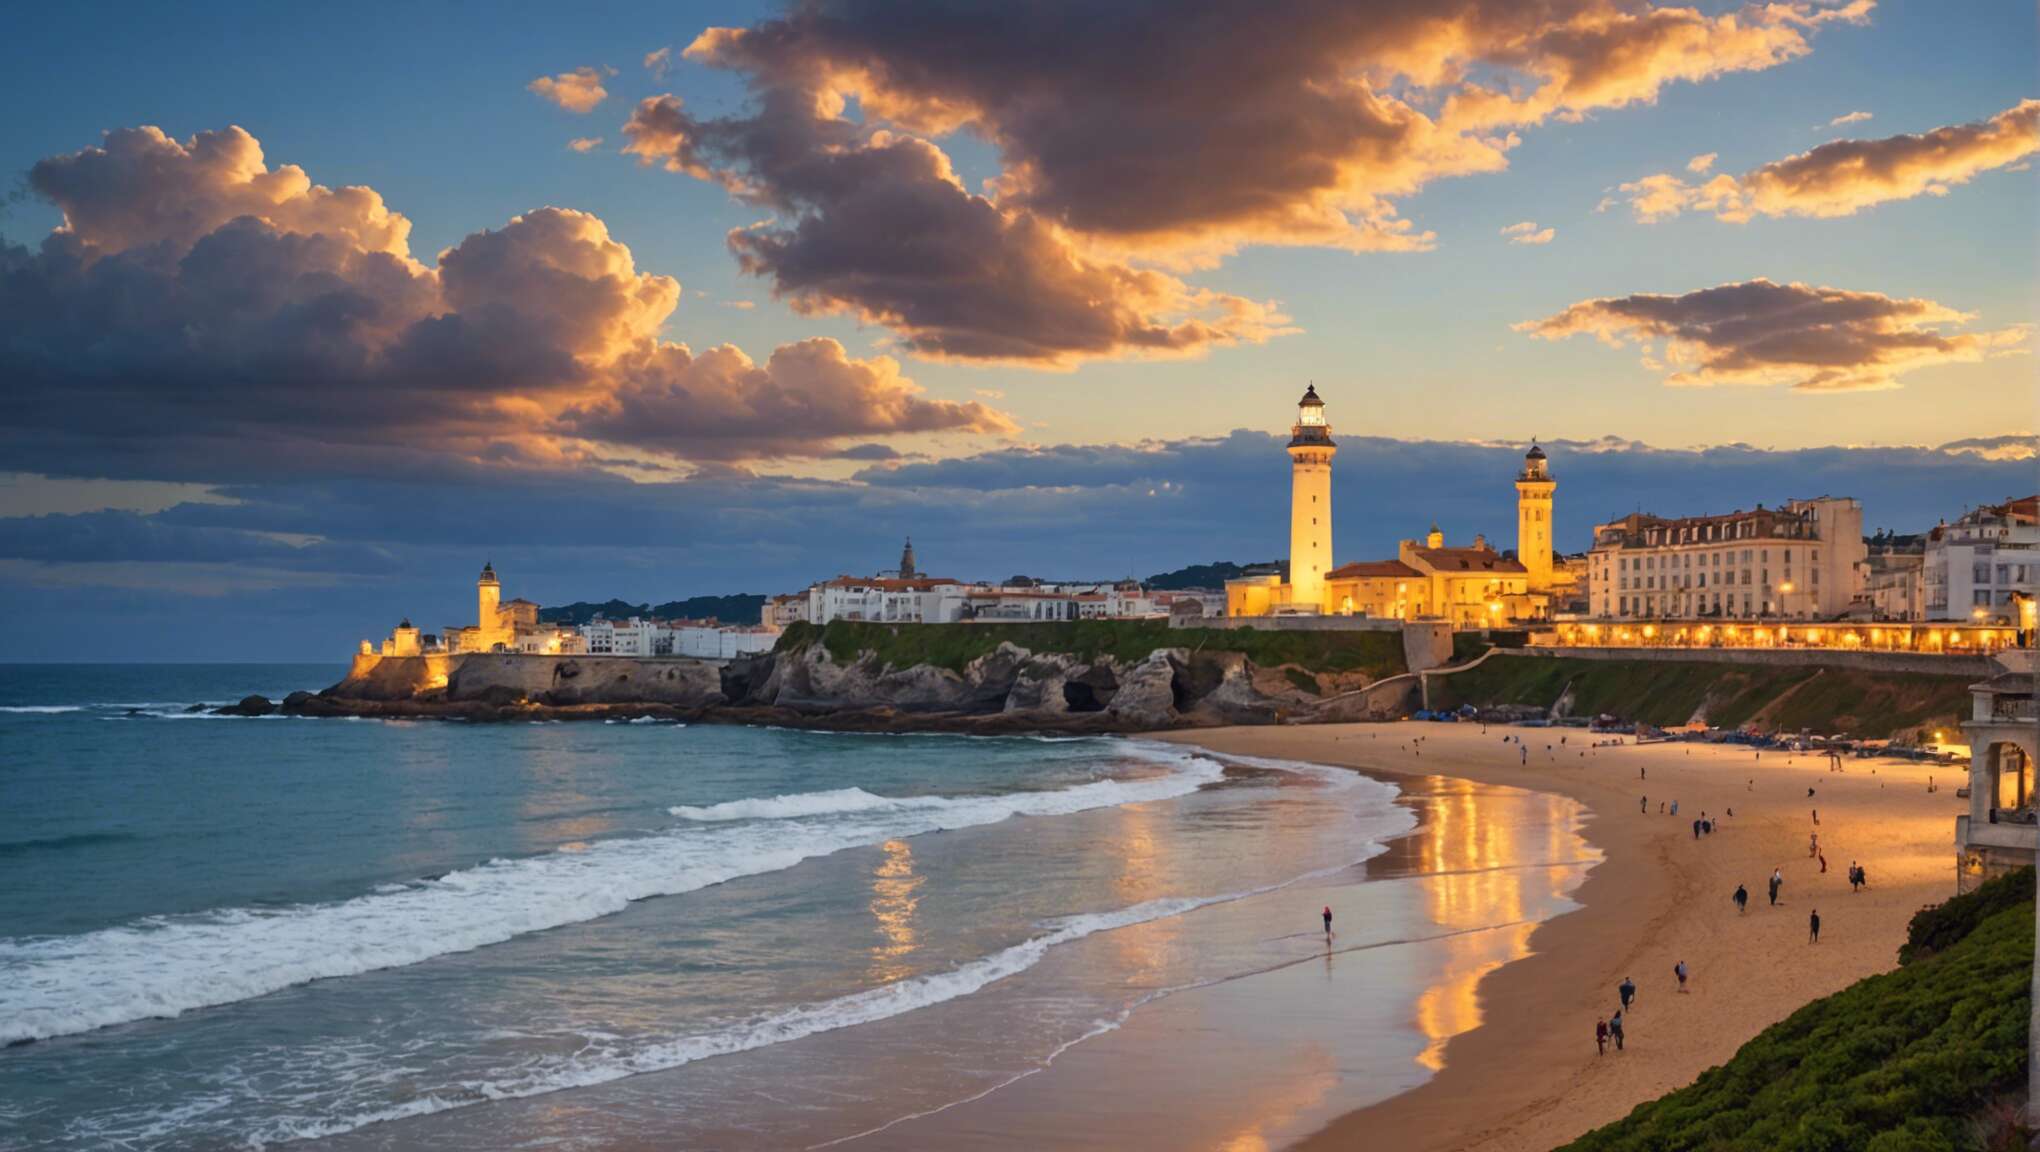 Les incontournables de biarritz : plages et patrimoine culturel